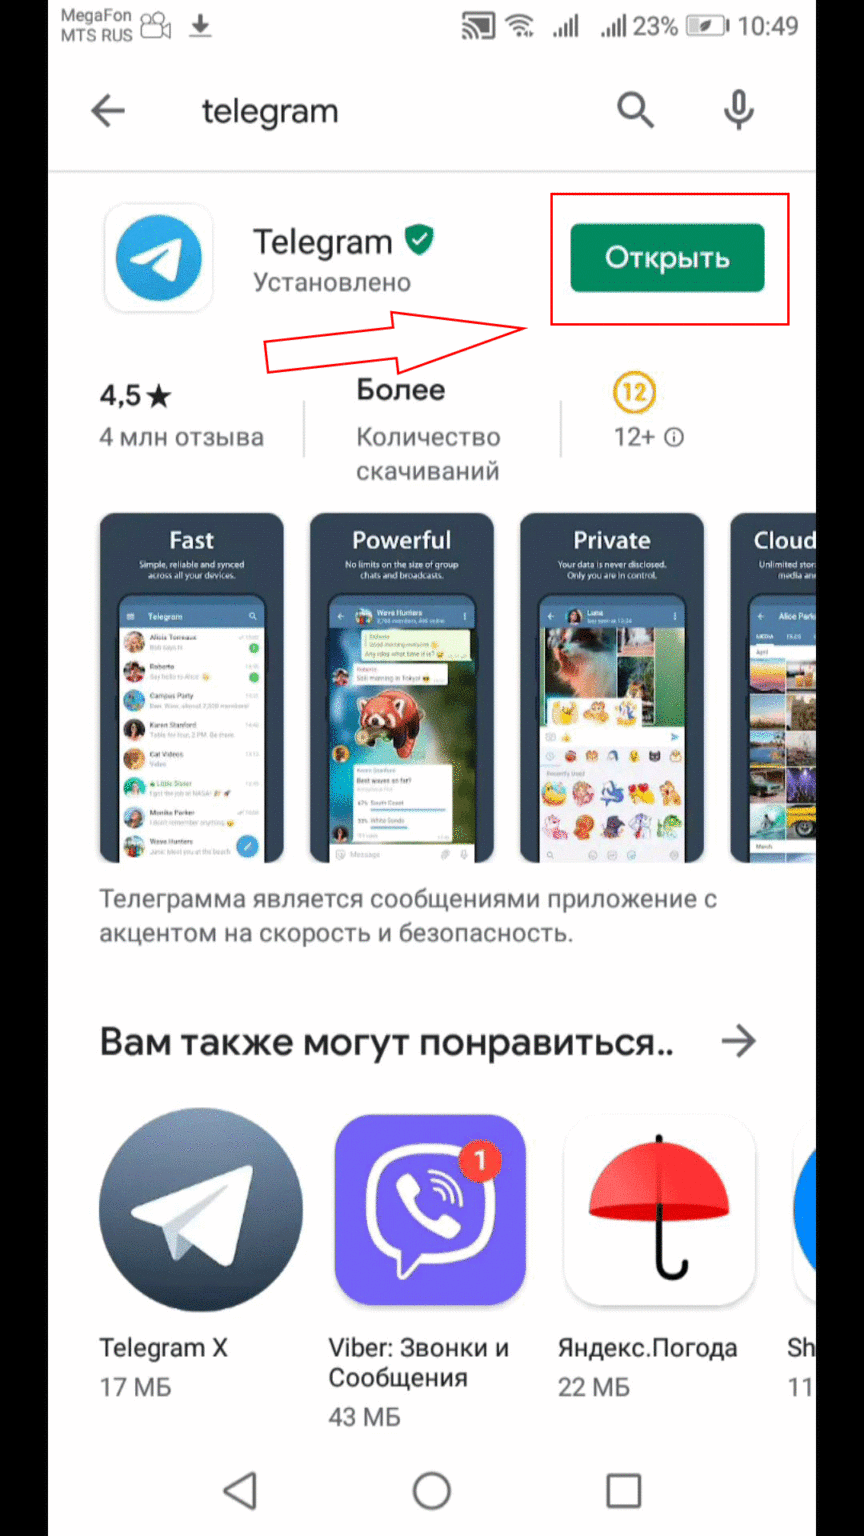 Скачать бесплатно телеграмм на русском языке для андроид последняя версия бесплатно без вирусов фото 88